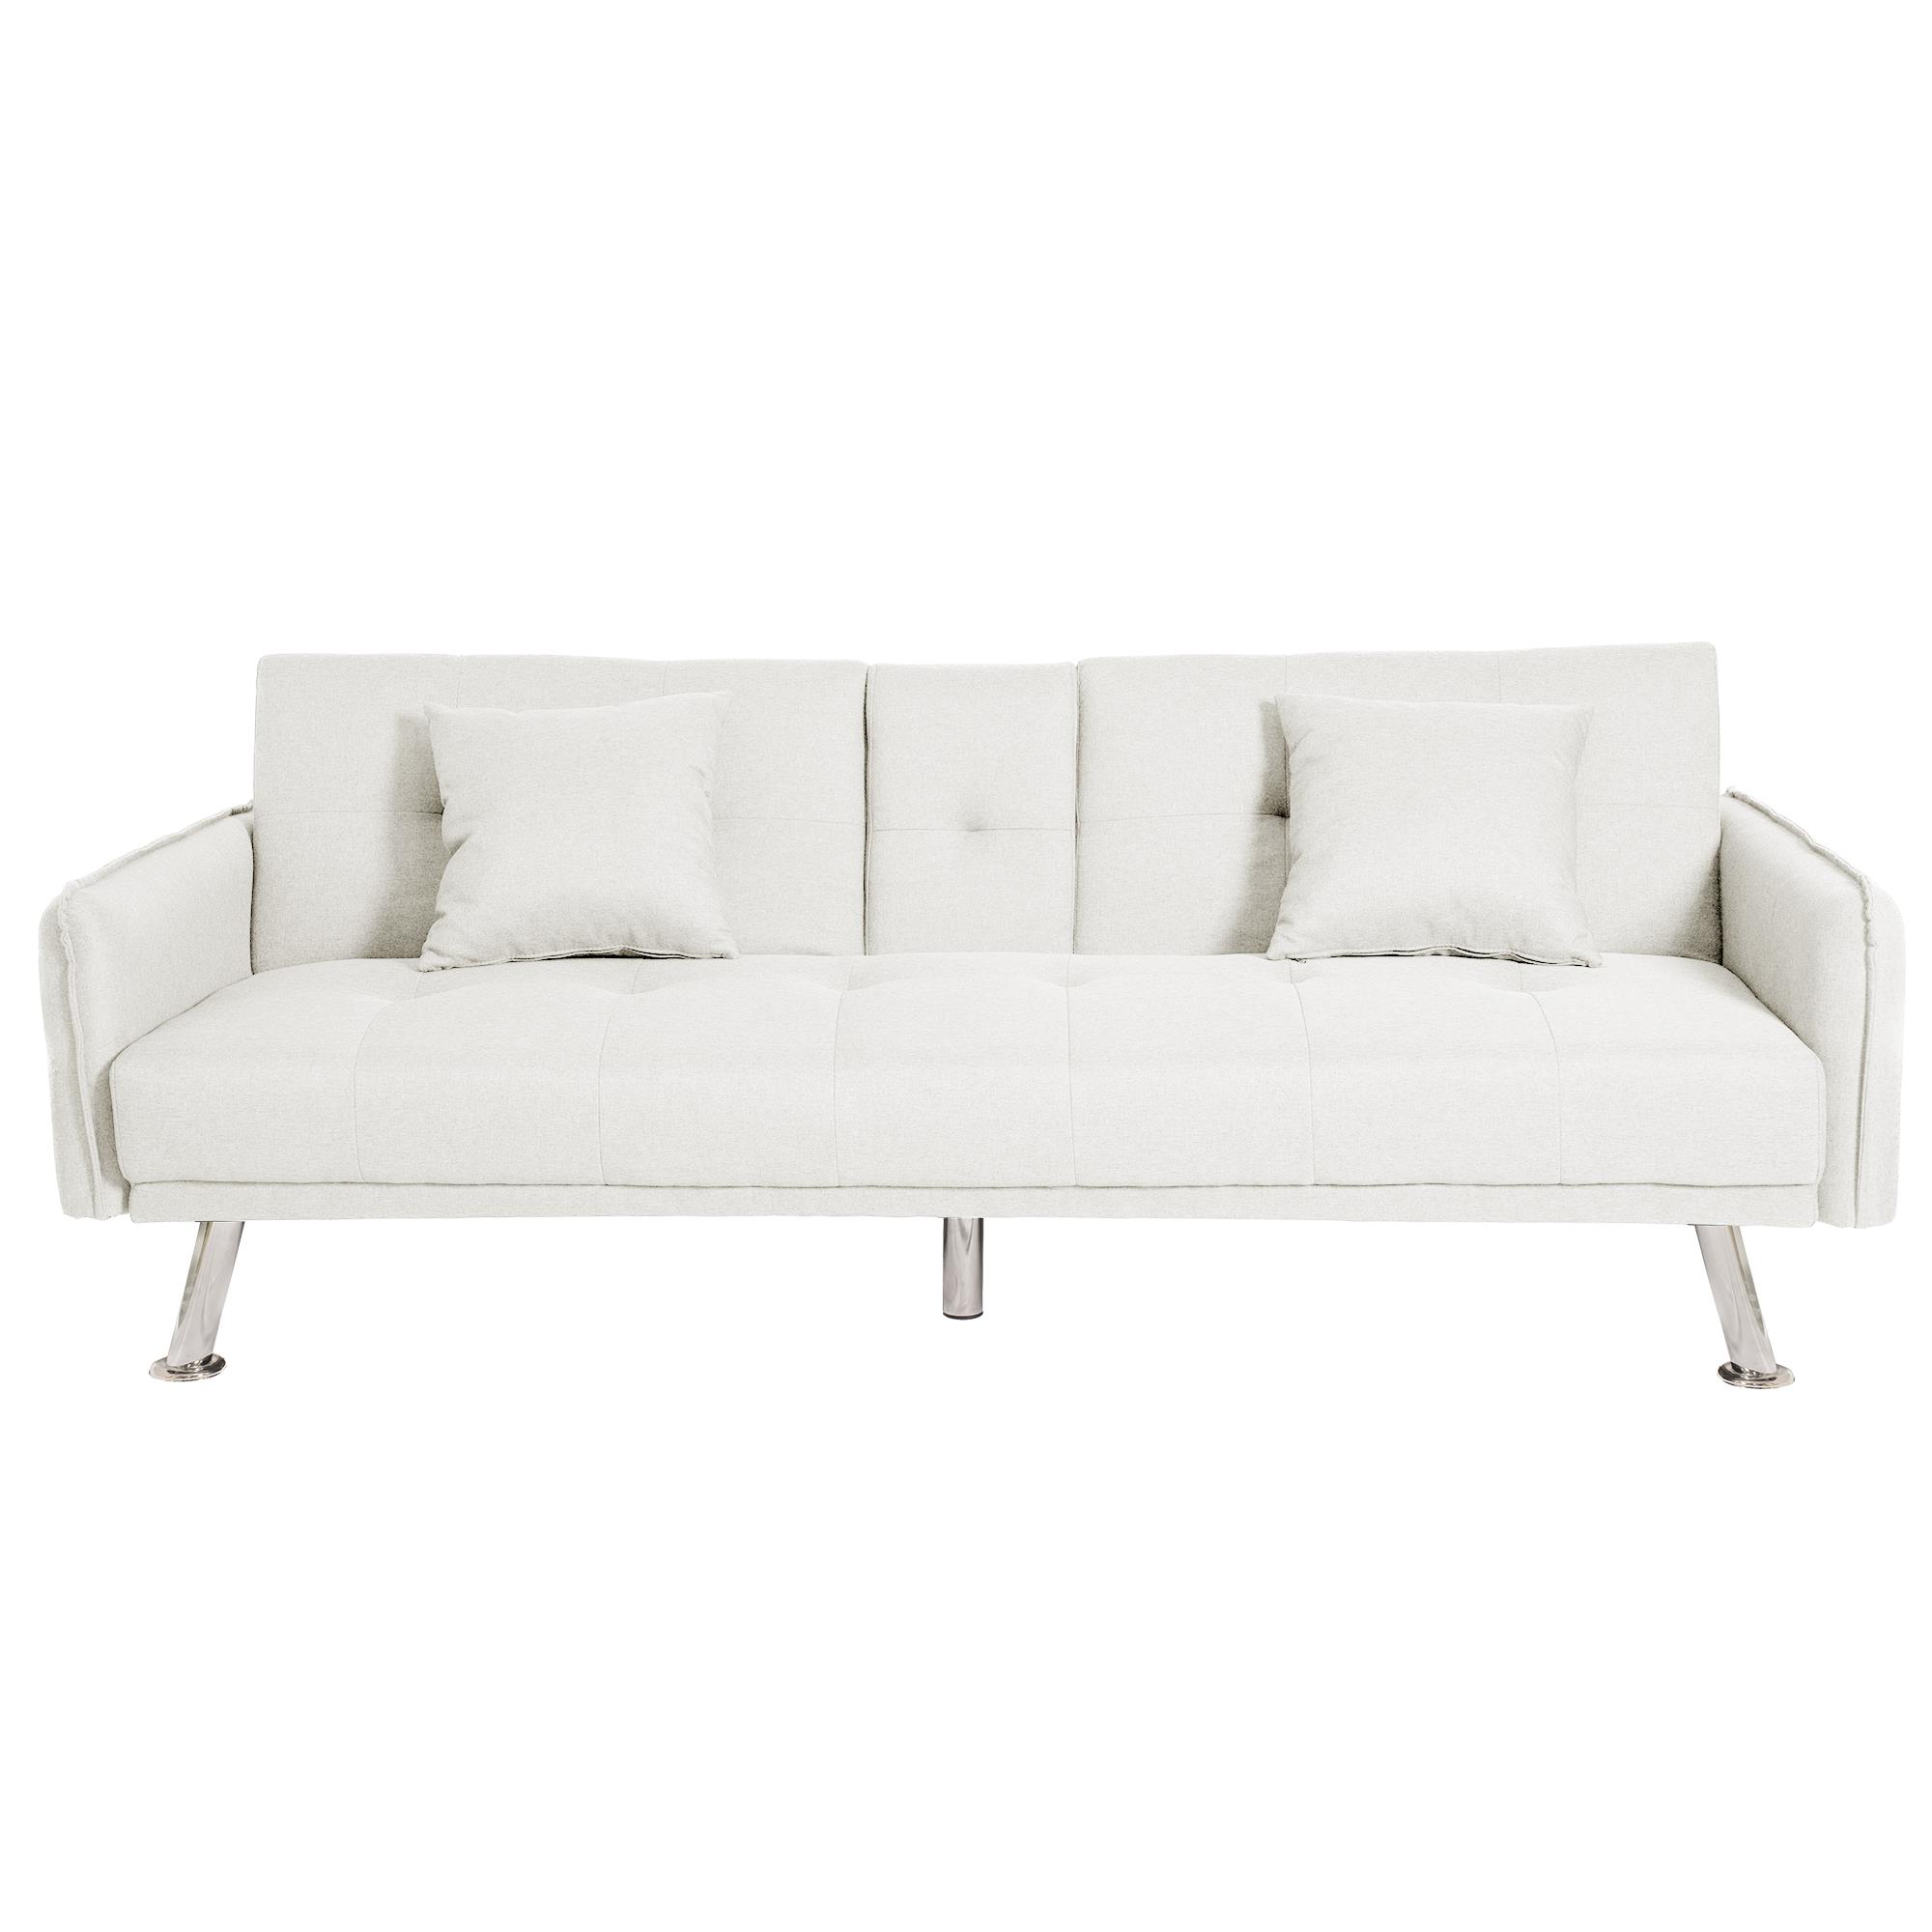 ספה תלת מושבית נפתחת למיטה תלת מושבית דגם פריז צבע לבן שנהב